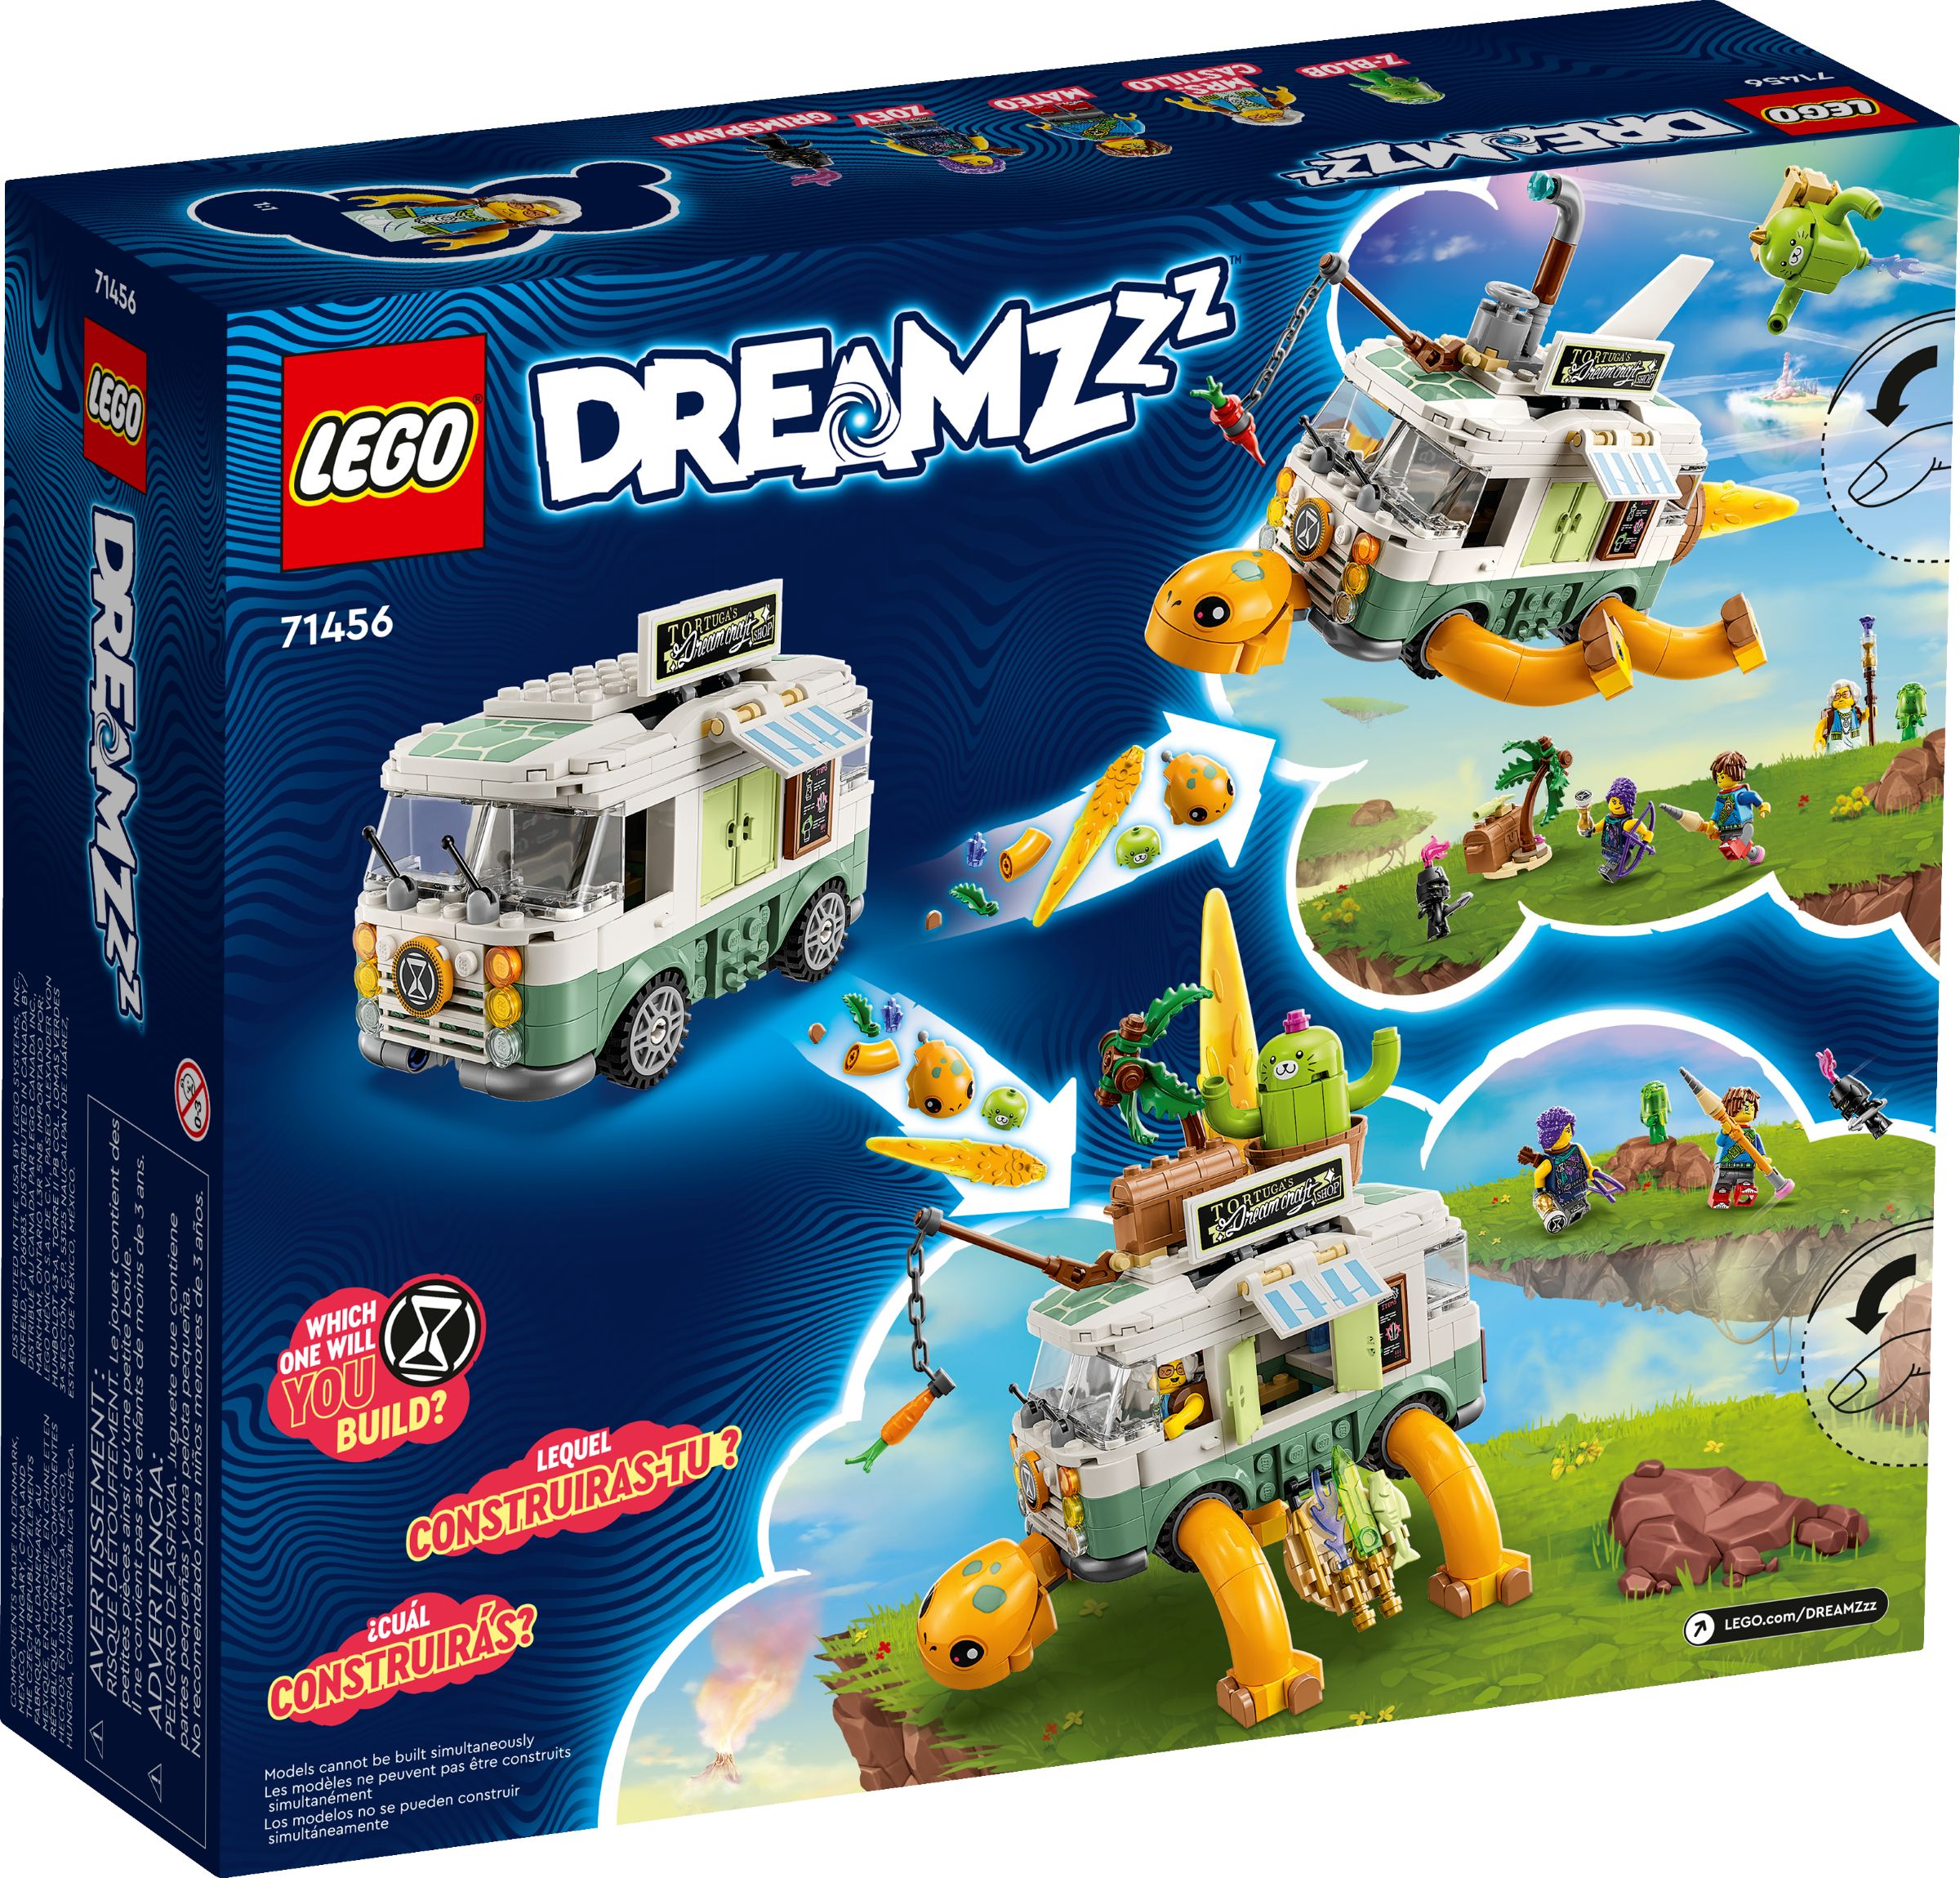 LEGO Dreamzzz 5008137 Traumwelt Paket LEGO_71456_alt2.jpg